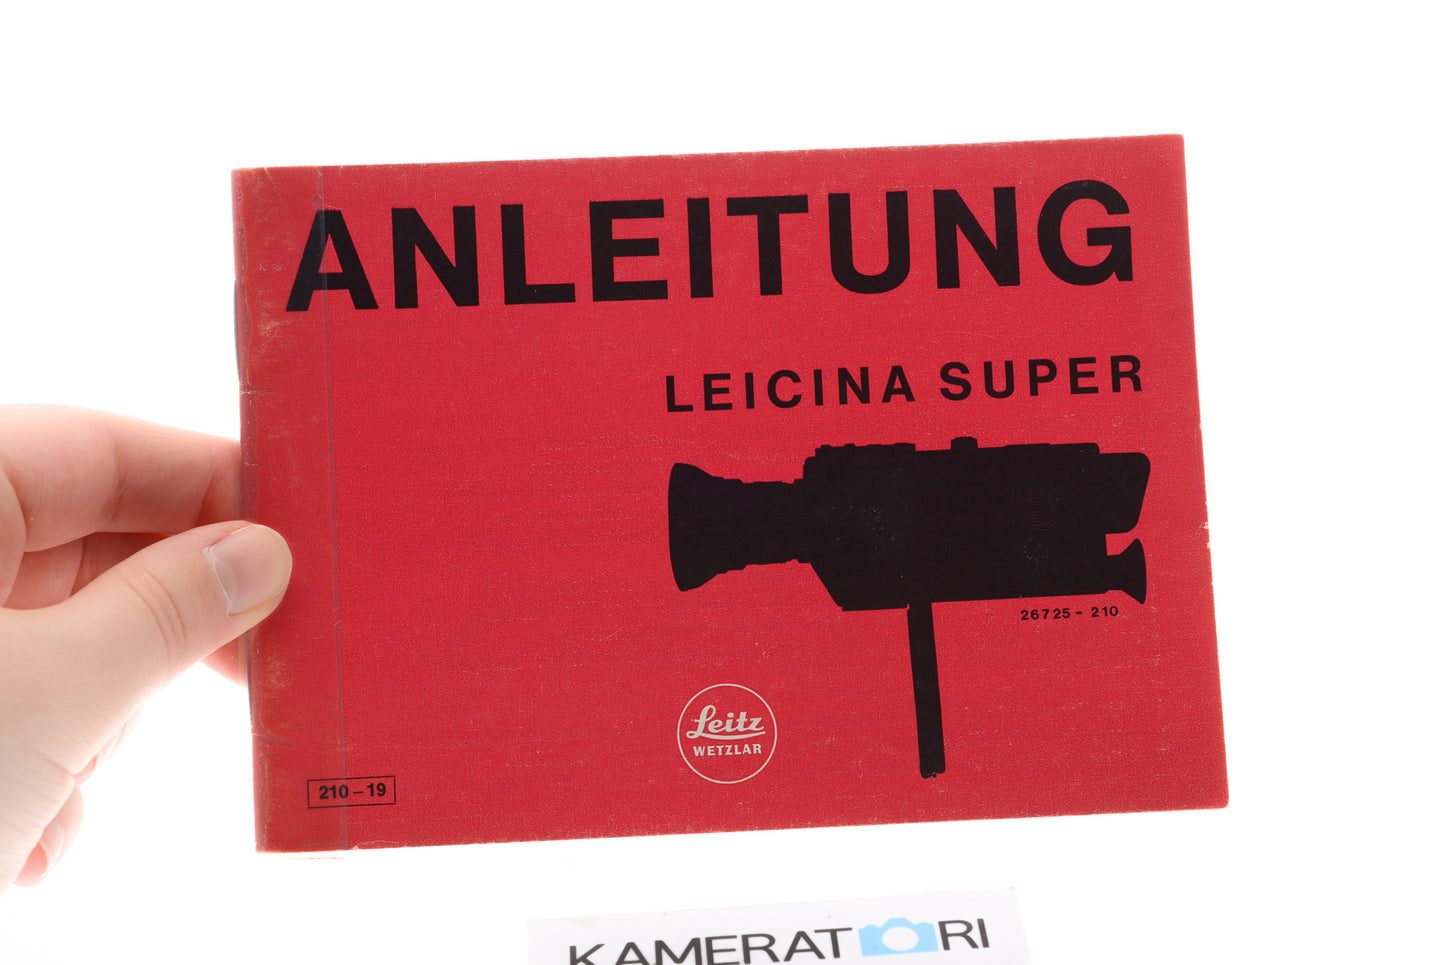 Leica Leicina Super Anleitung